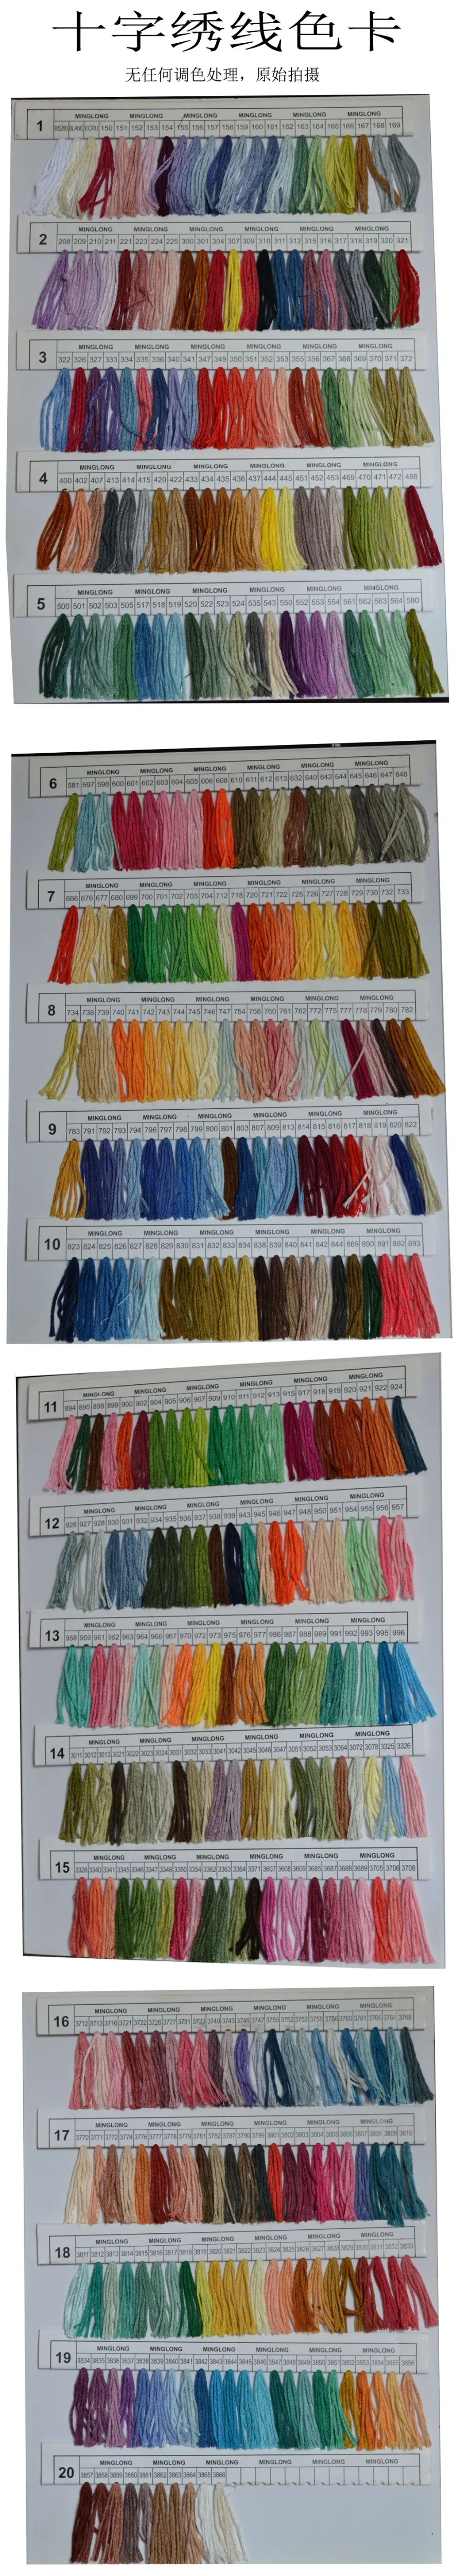 447/250 цветов Смешанные цвета хлопок вышивка нить наборы для DIY Вышивка крестиком шитье Skein ремесла 6 прядей 8 м шитье Skein